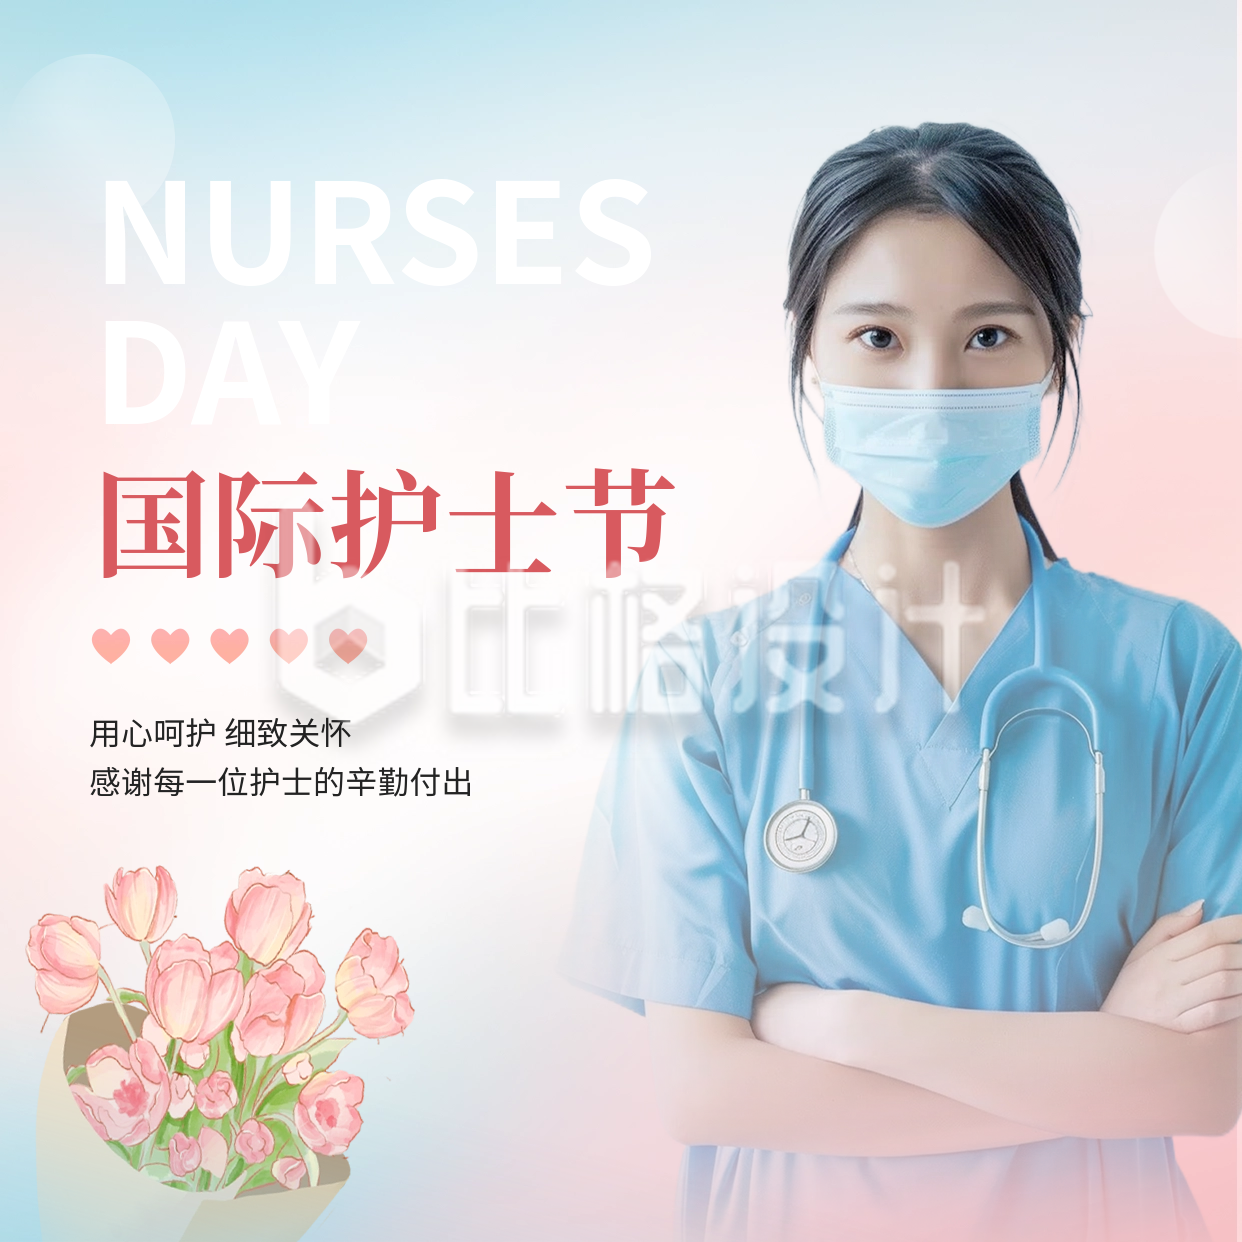 国际护士节祝福方形海报